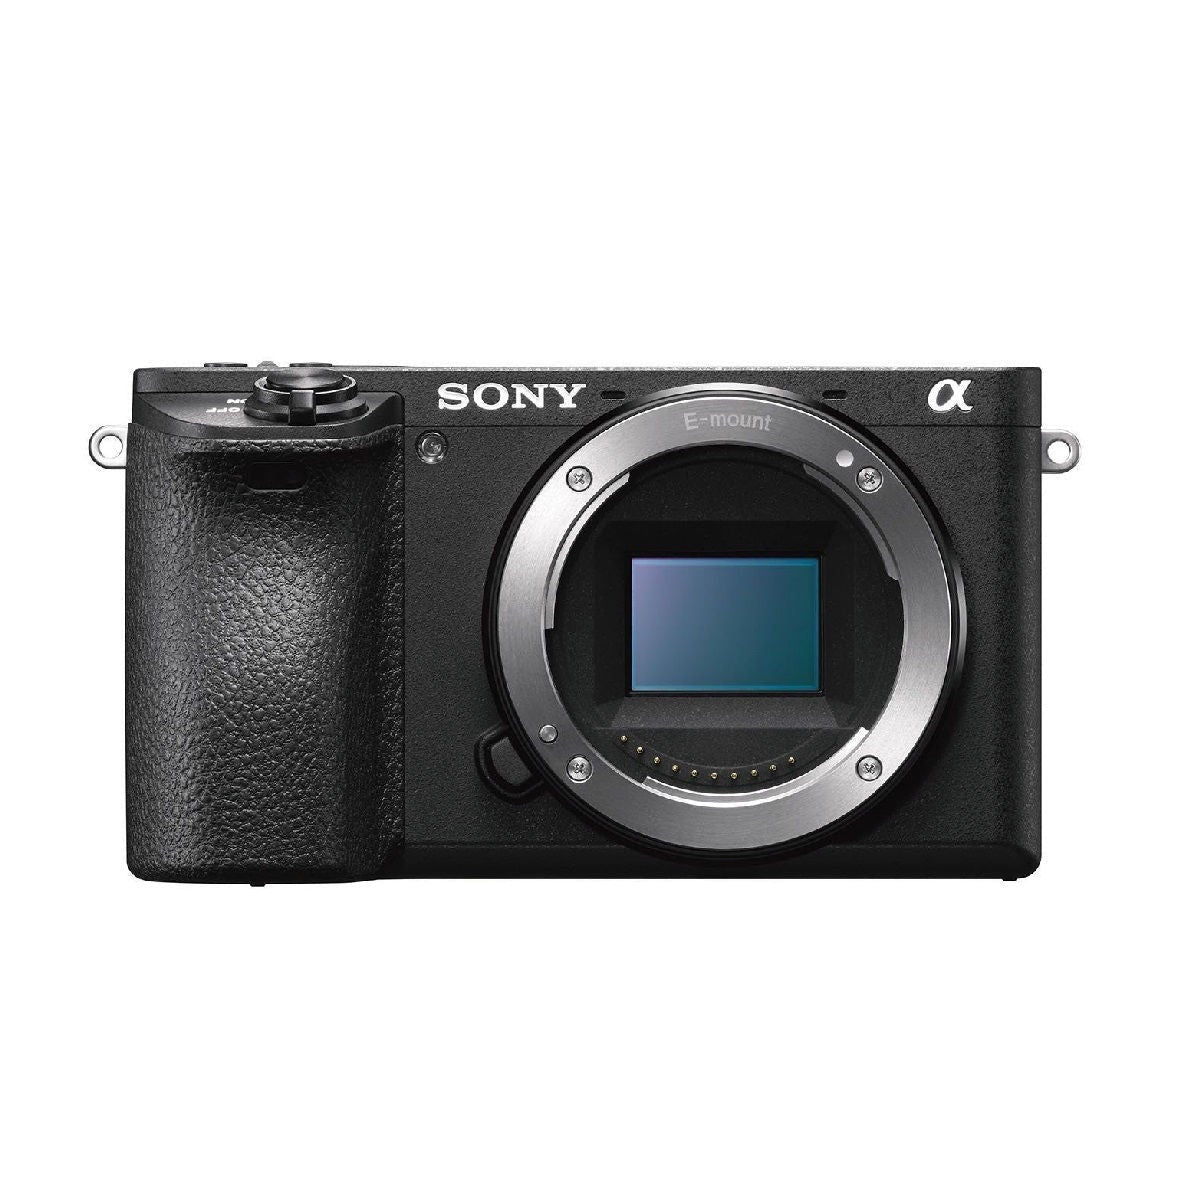 केवल Sony Ilce 6500 डिजिटल एसएलआर कैमरा बॉडी